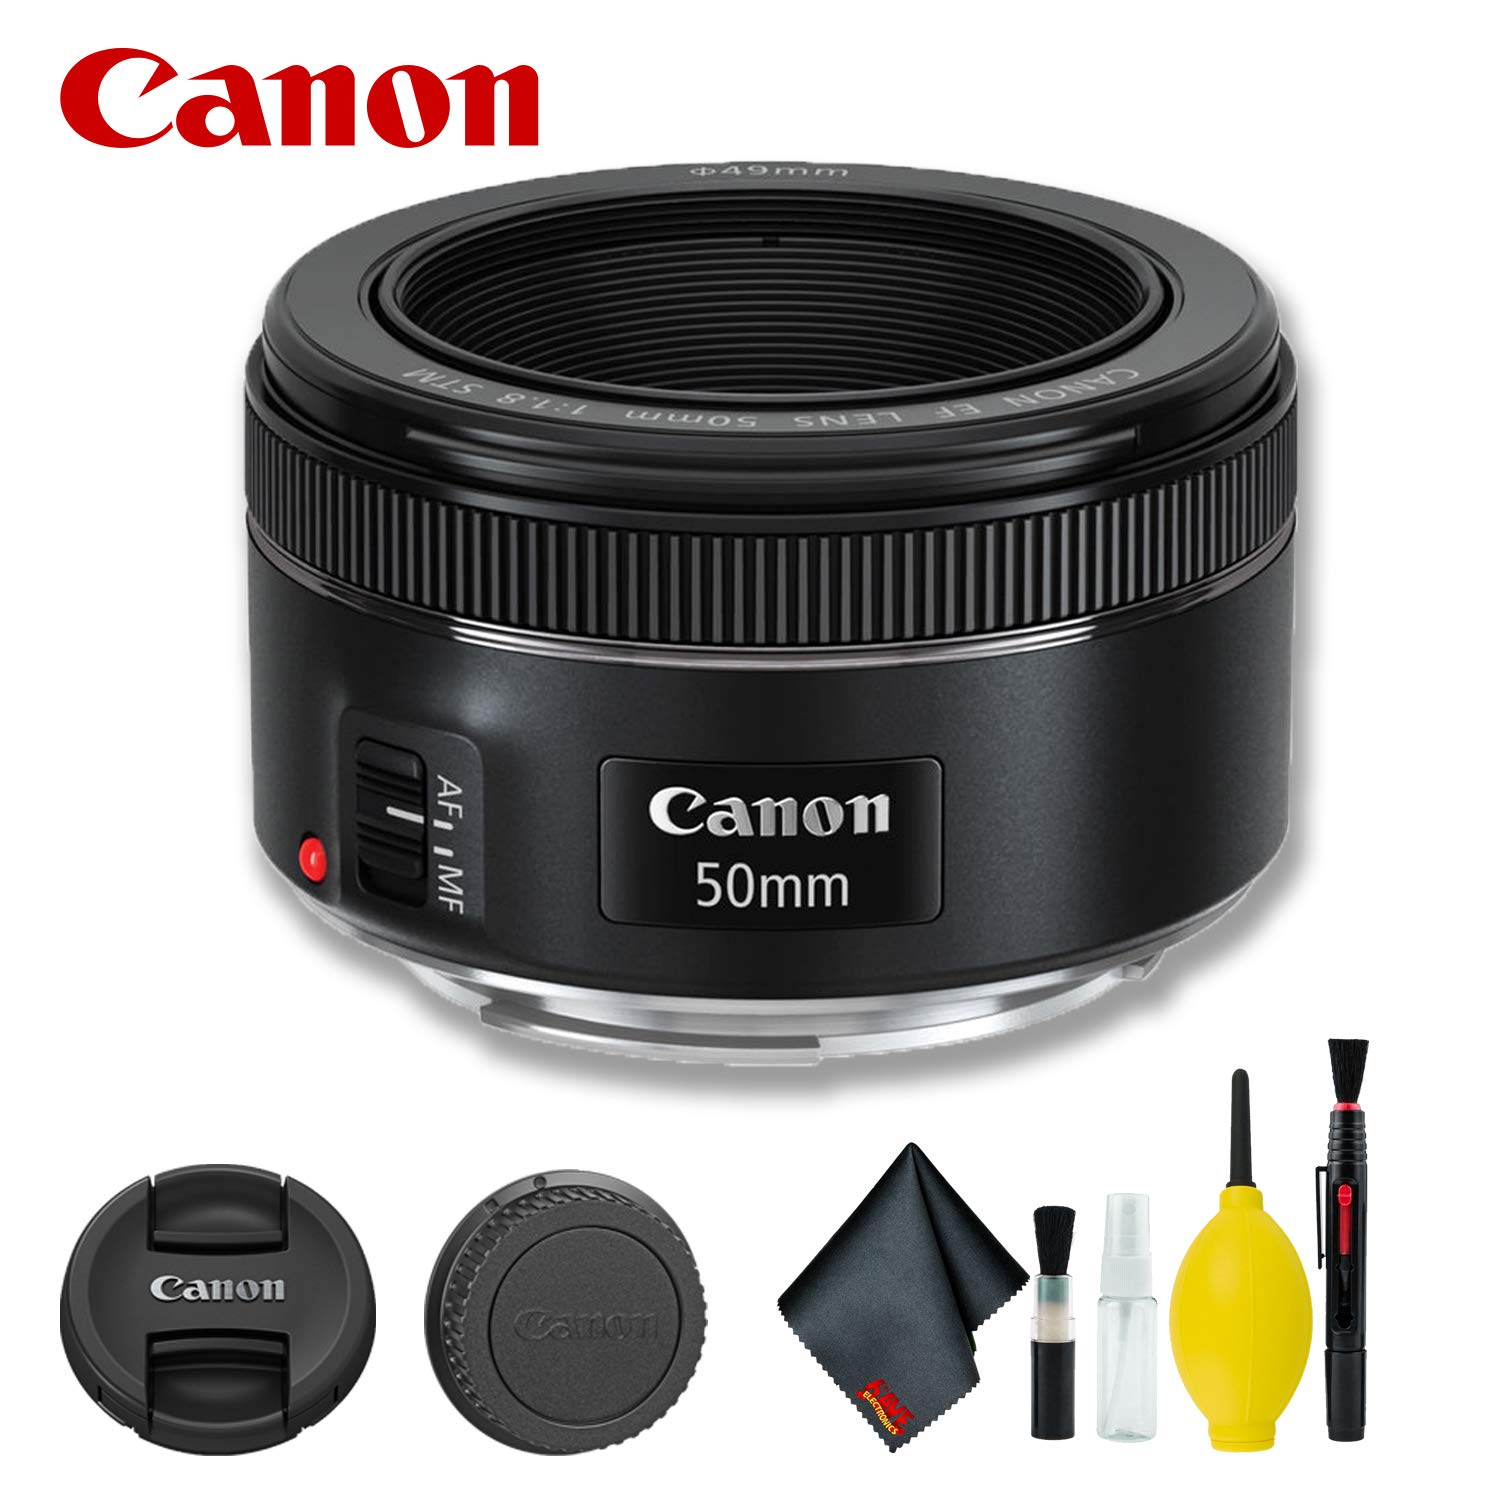 Canon EF 50mm f/1.8 STM Lens (International Model) Basic Bundle